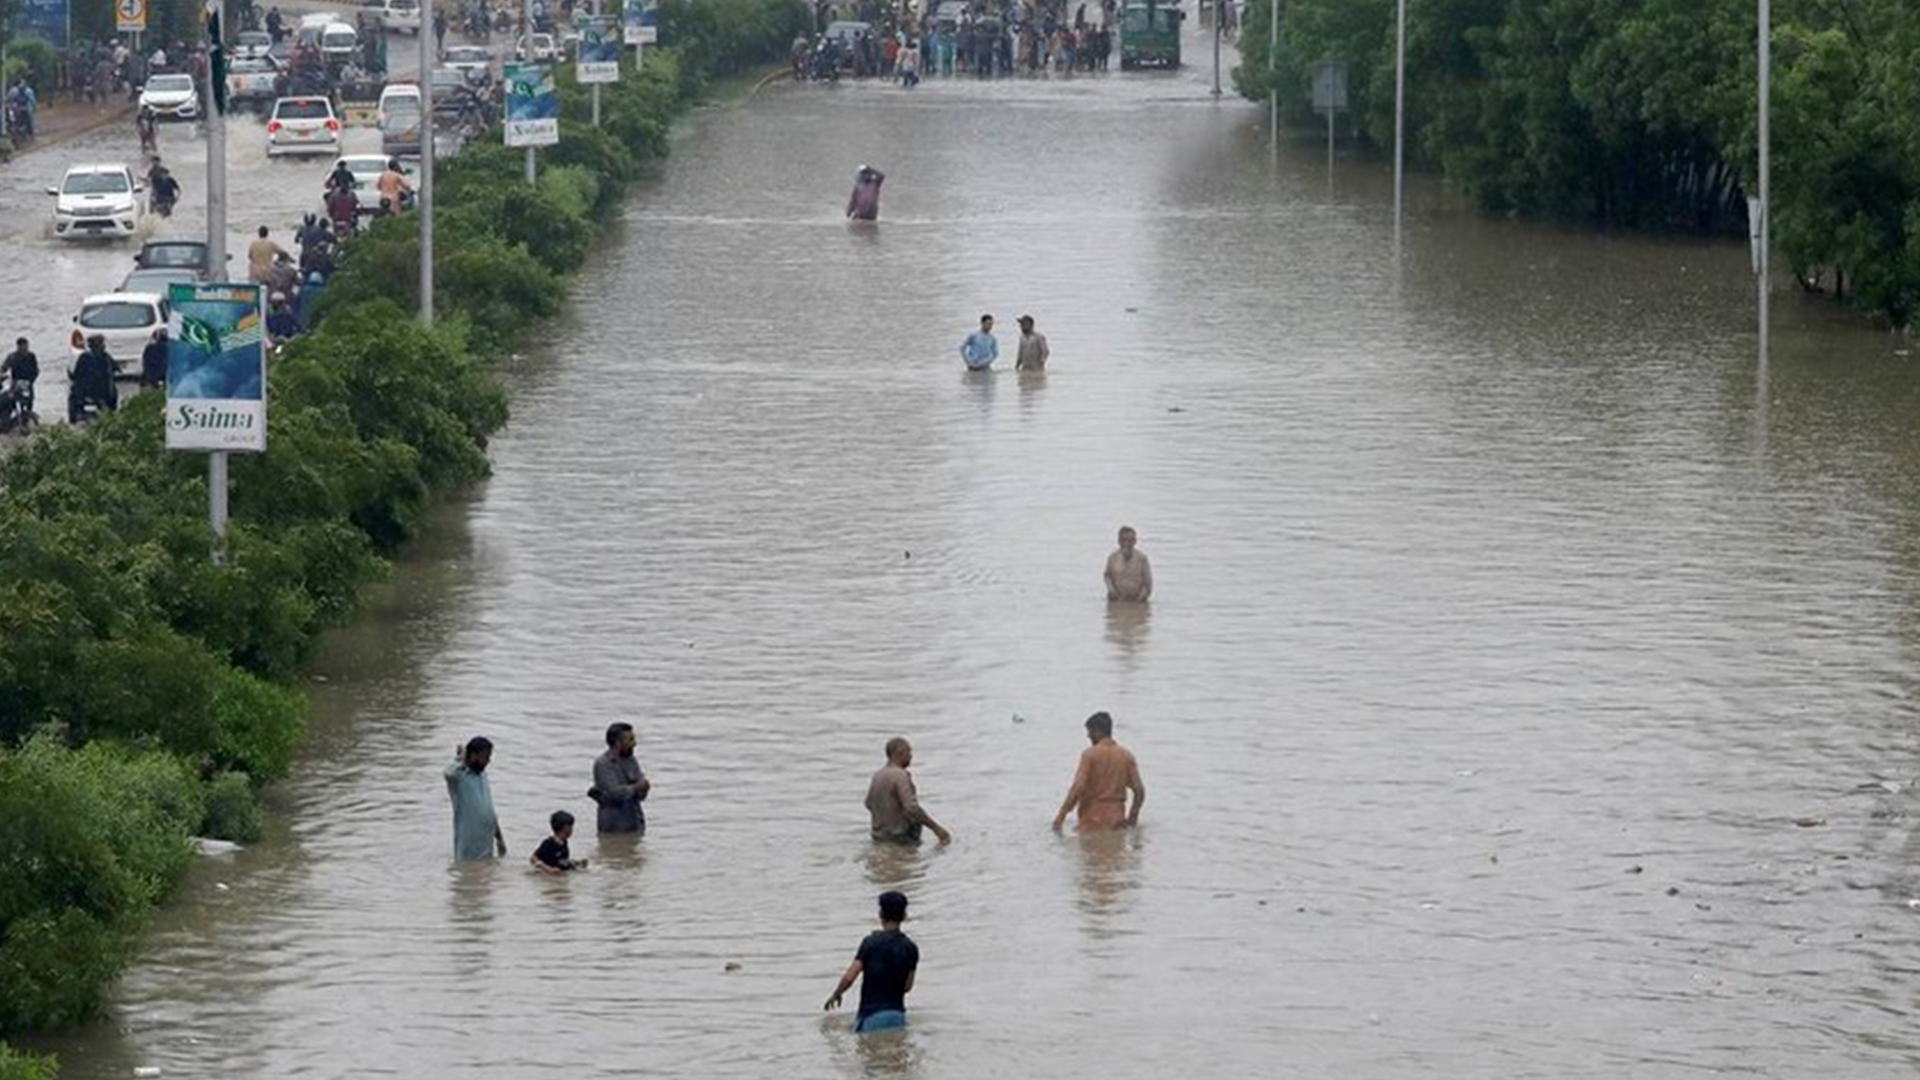 Pakistan floods: at least 90 killed in monsoon rains